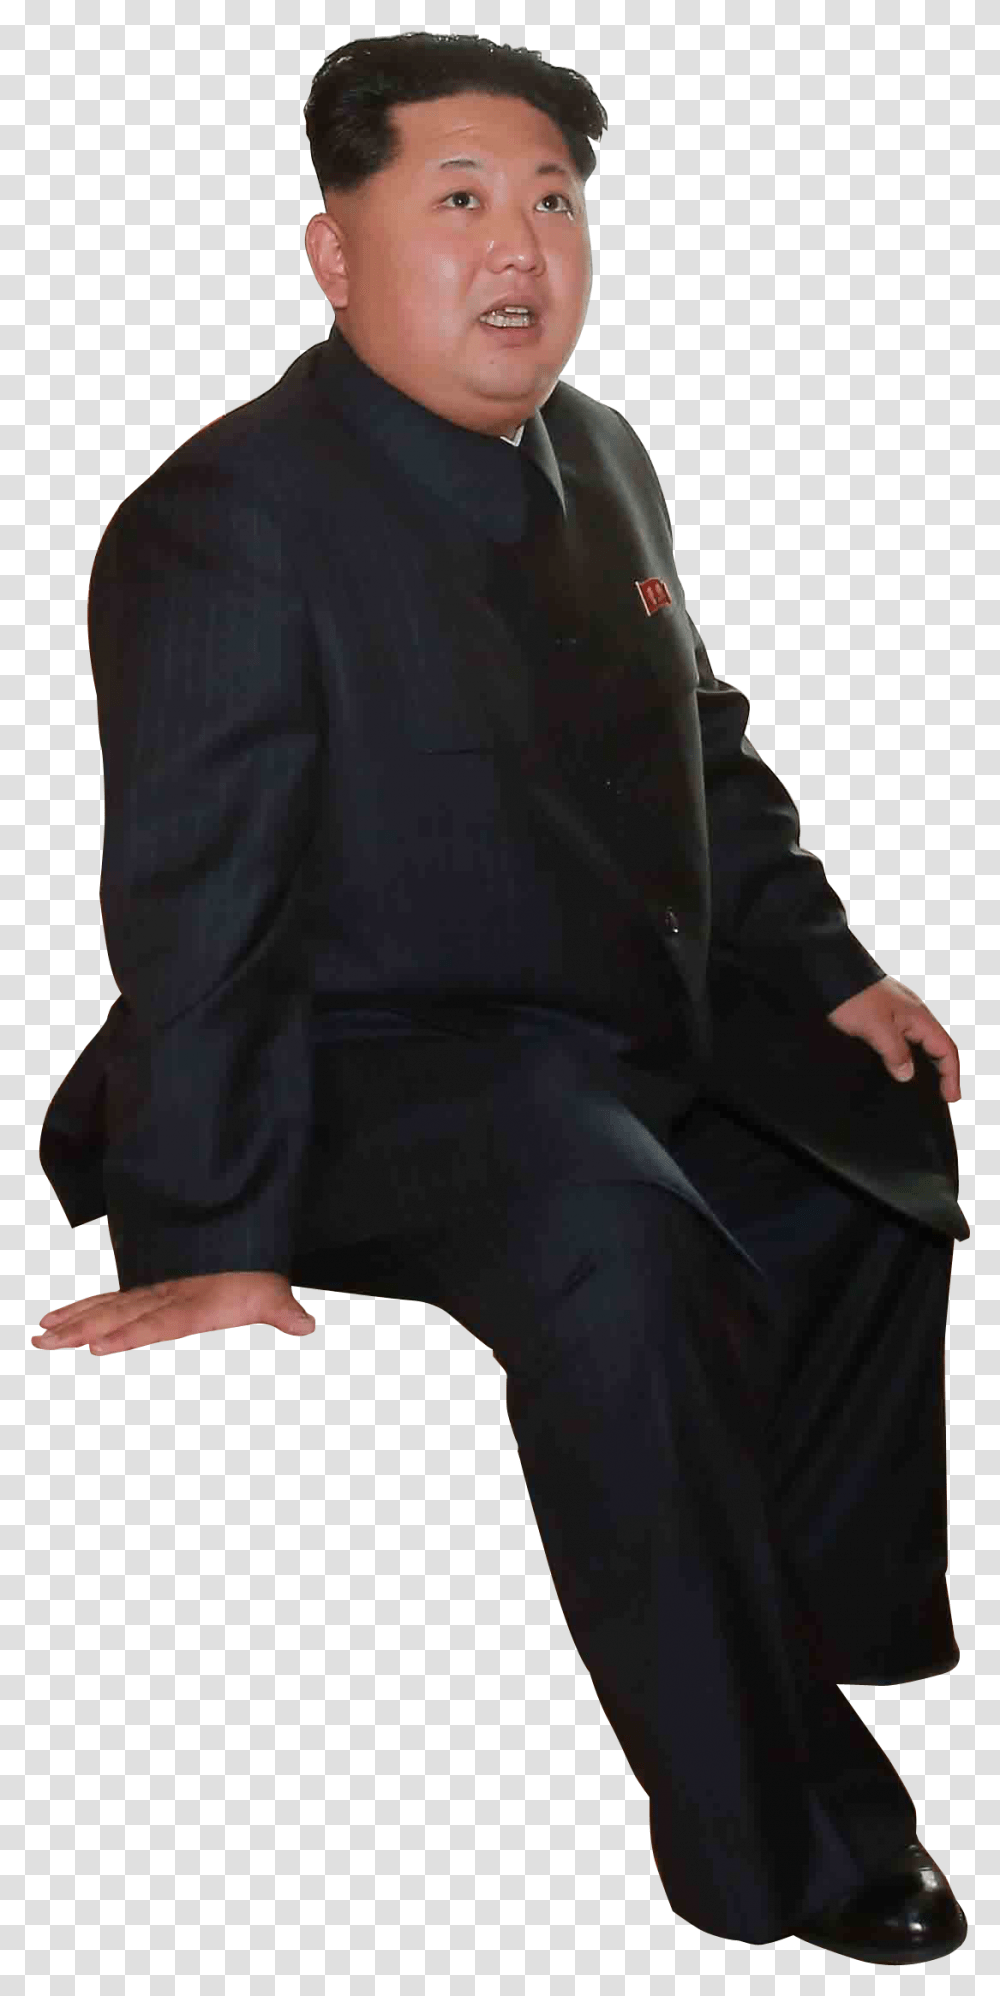 Kim Jong Un Sitting, Suit, Overcoat, Person Transparent Png